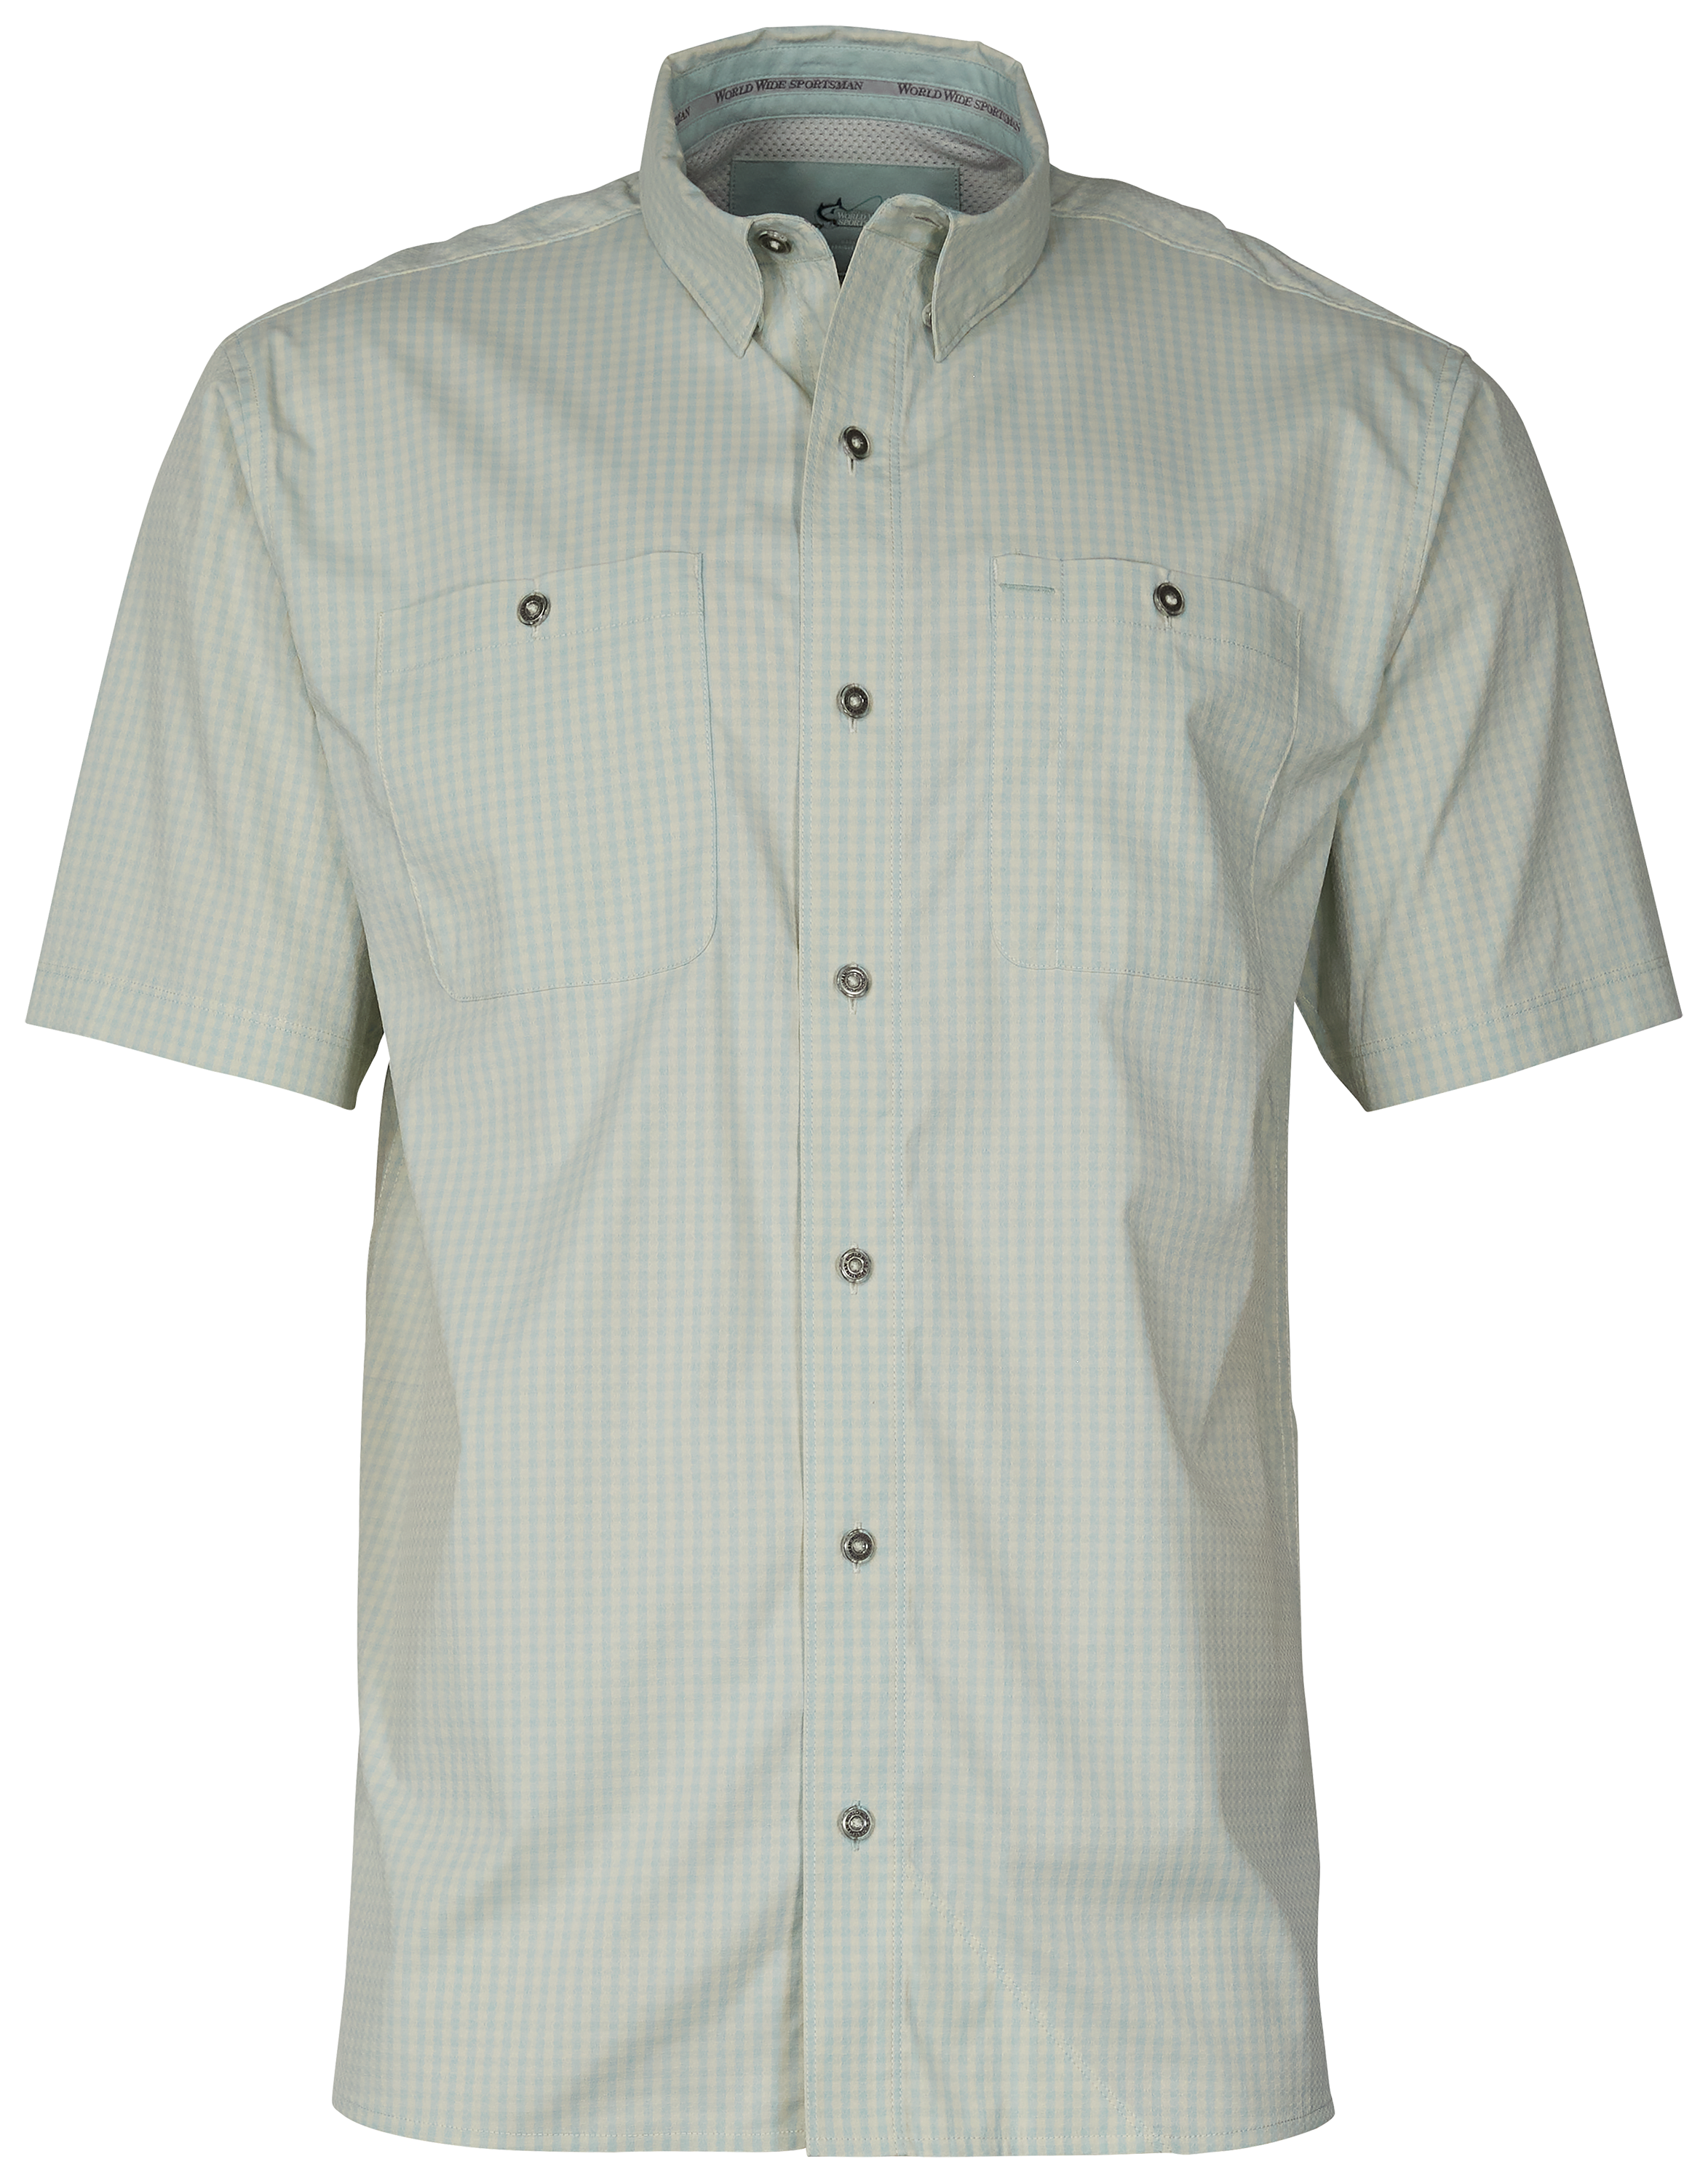 World Wide Sportsman Ultimate Angler Plaid Short-Sleeve Shirt for Men - Harbor Gray Gingham - M